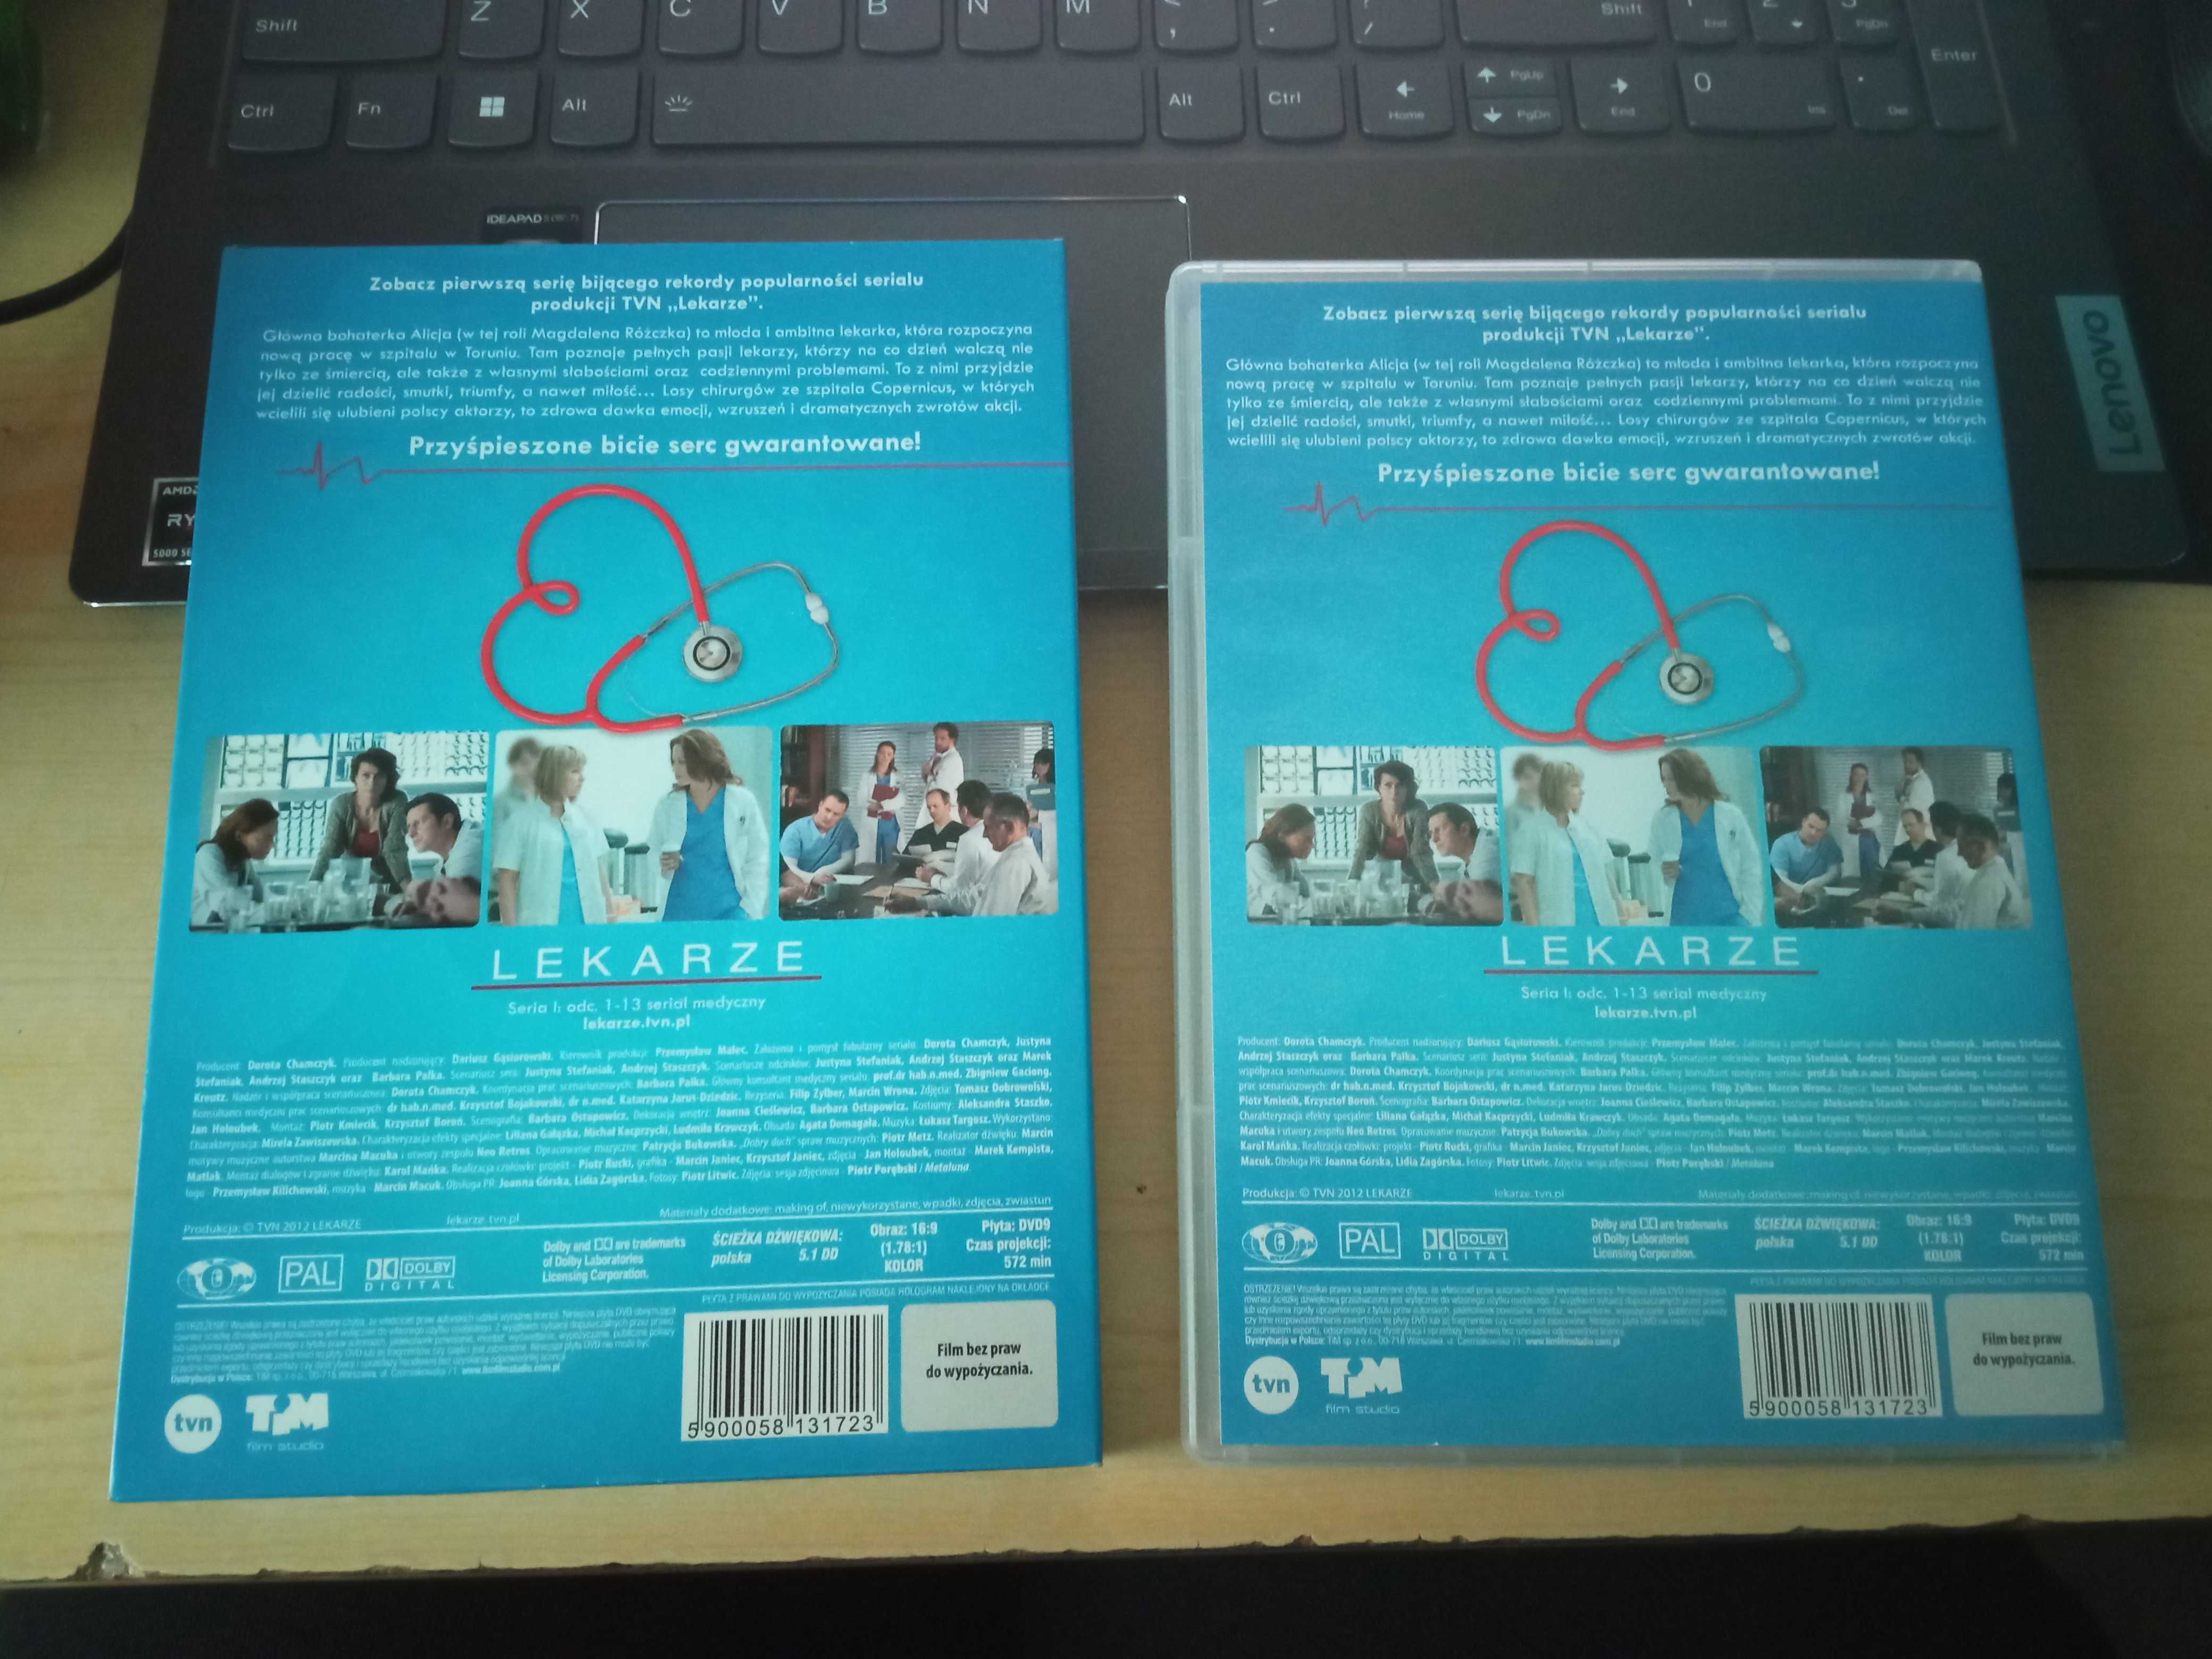 Lekarze sezon 1 na DVD